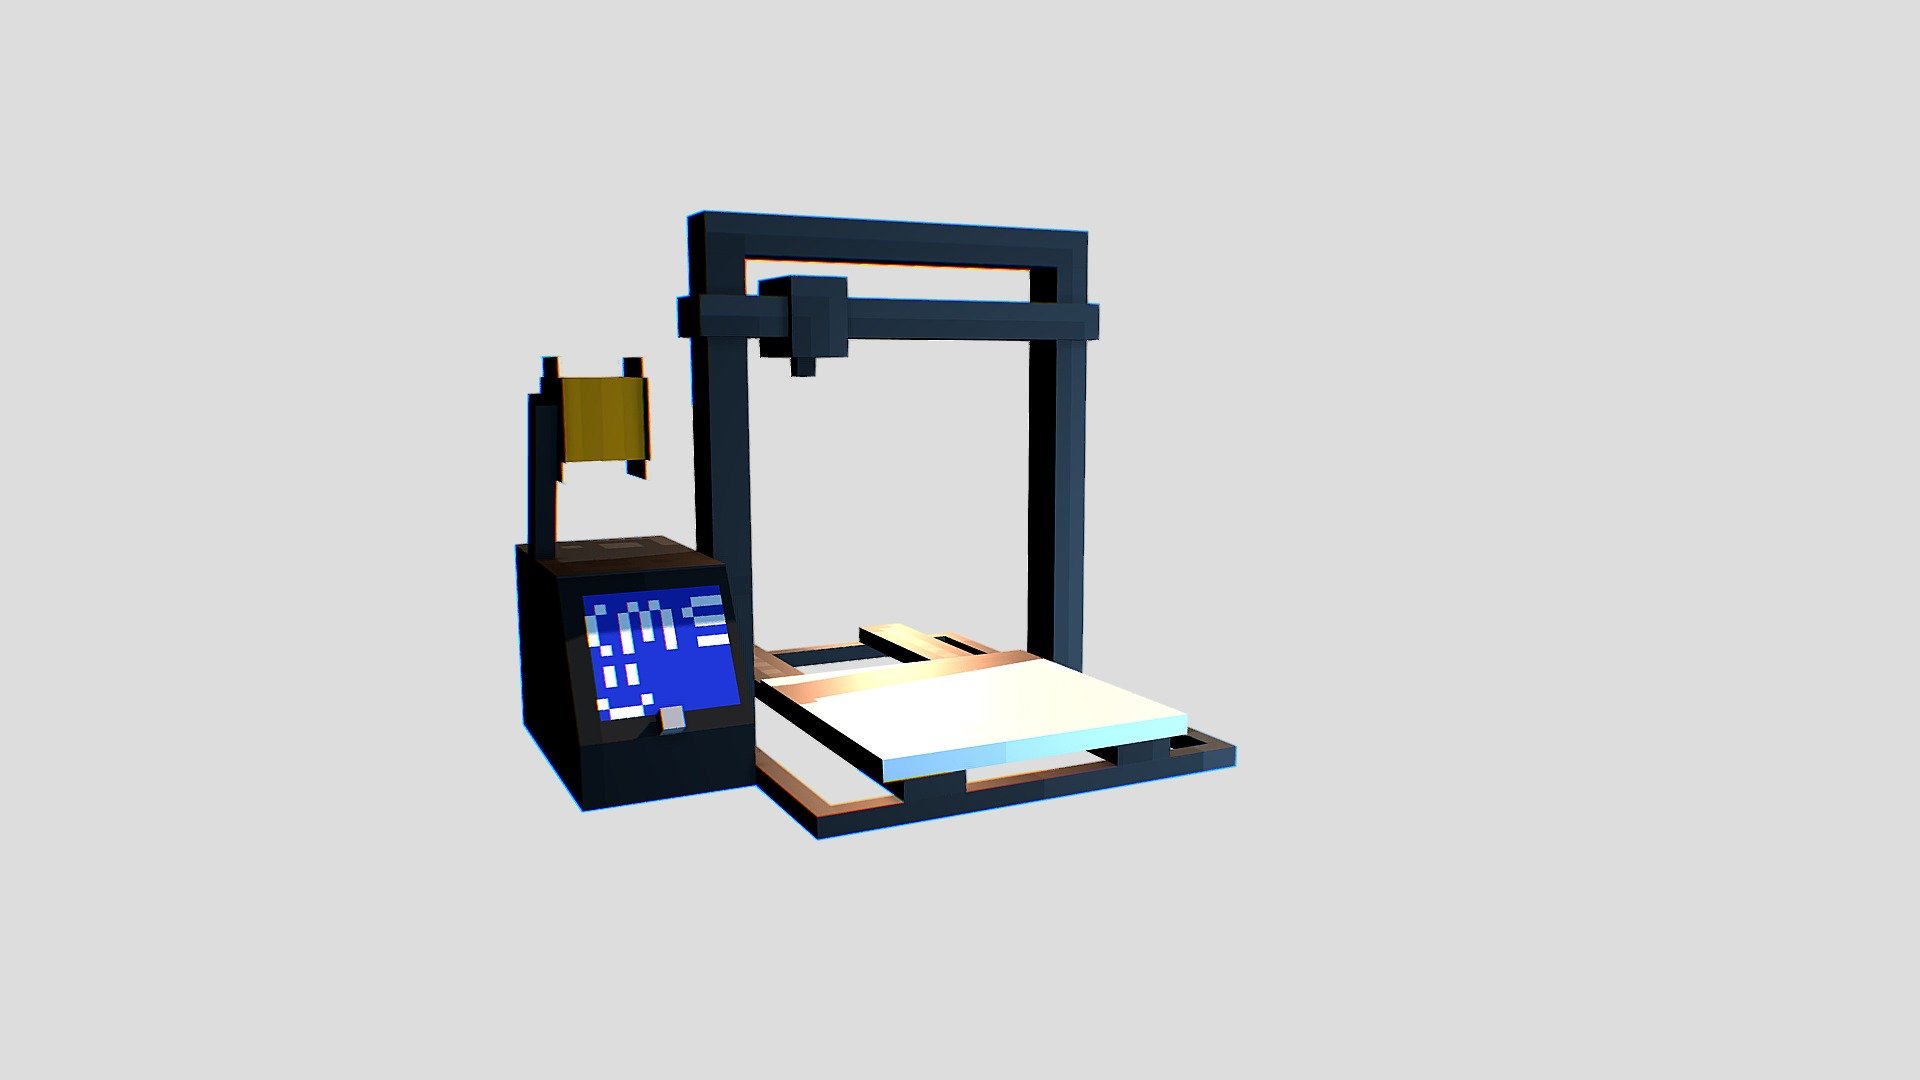 3D Printer - 3D model by LorenOLoren [14b983a] - Sketchfab